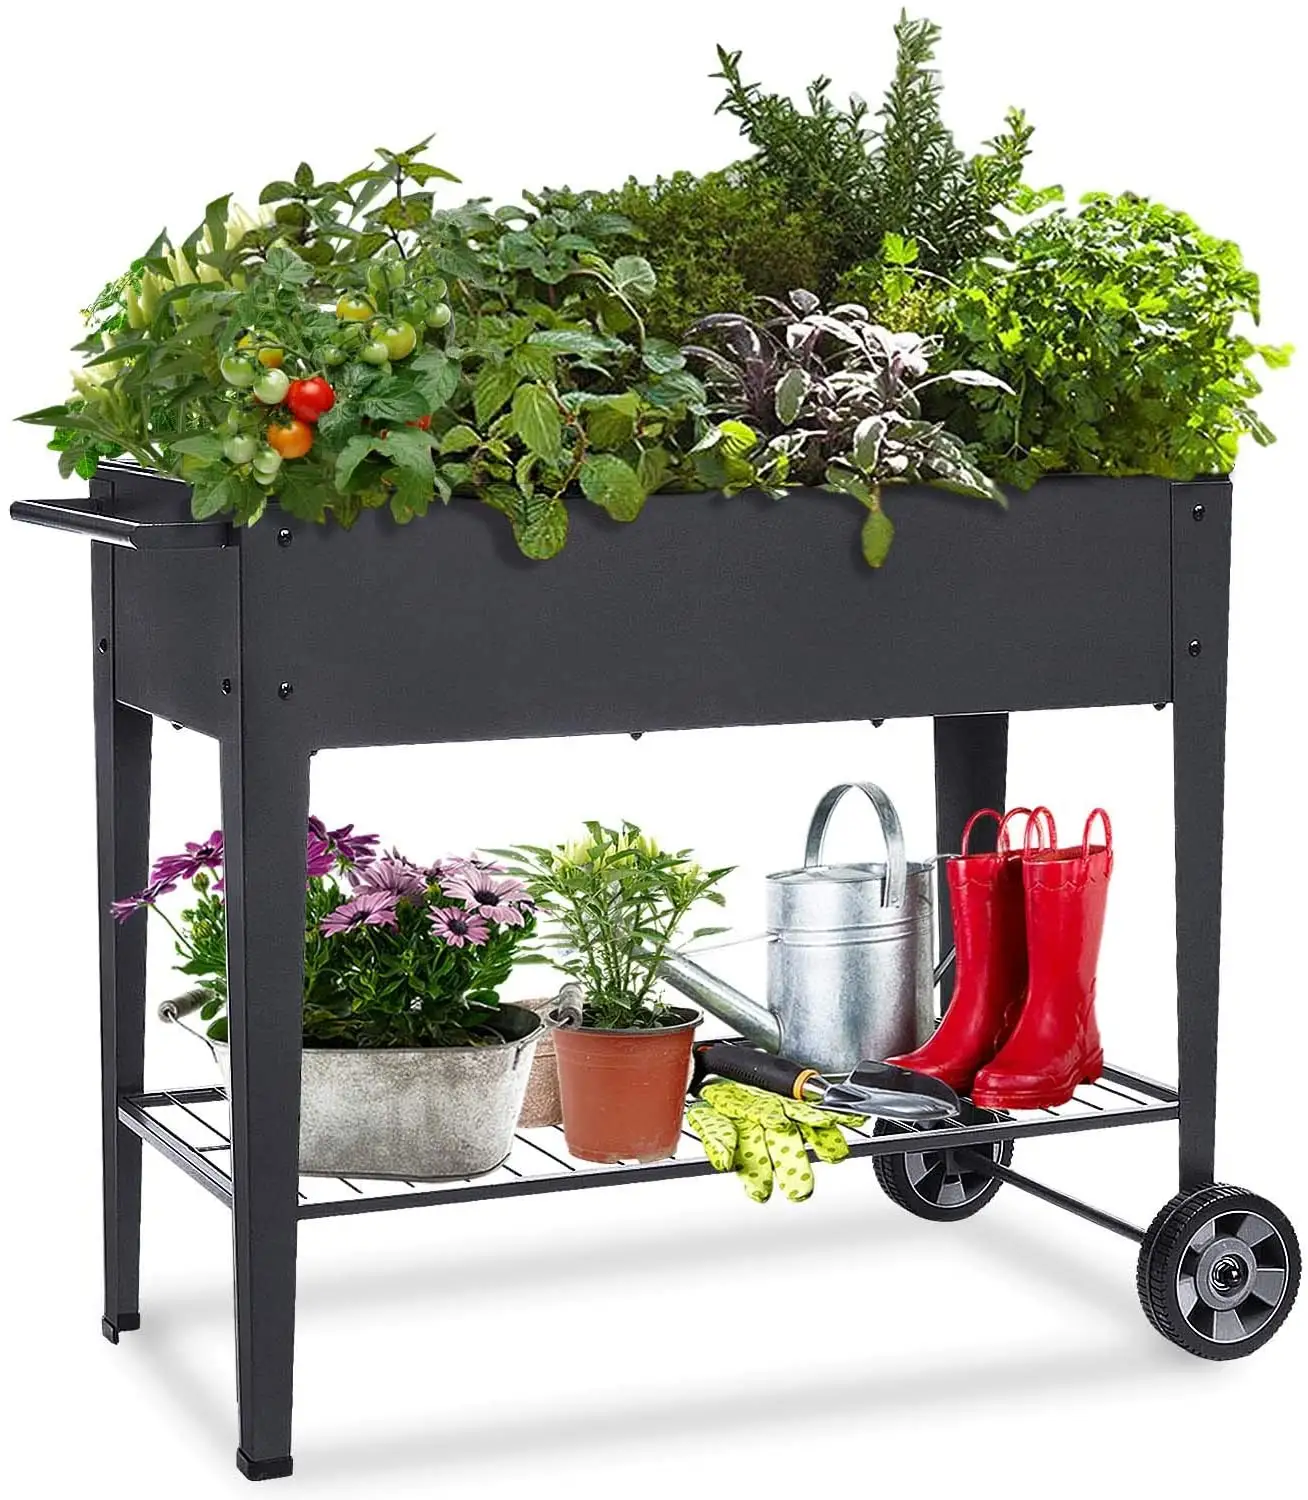 Rgb01a caixa elevada de plantador, com pernas, vegetais ao ar livre pátio com ervas, jardim cama